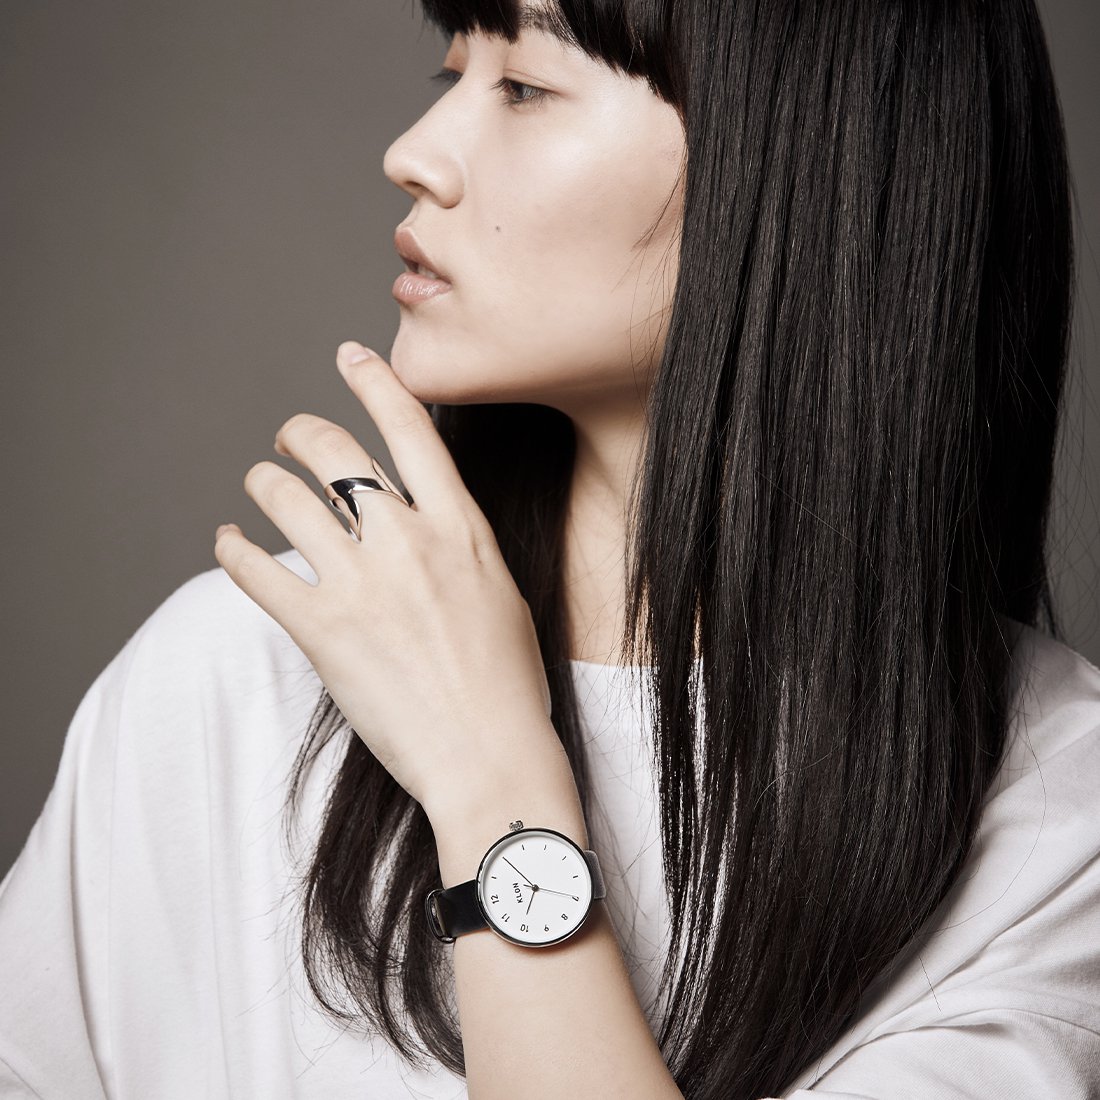 【組合せ商品】KLON CONNECTION ELFIN(FIRST:38mm×LATTER:33mm) カジュアル 腕時計